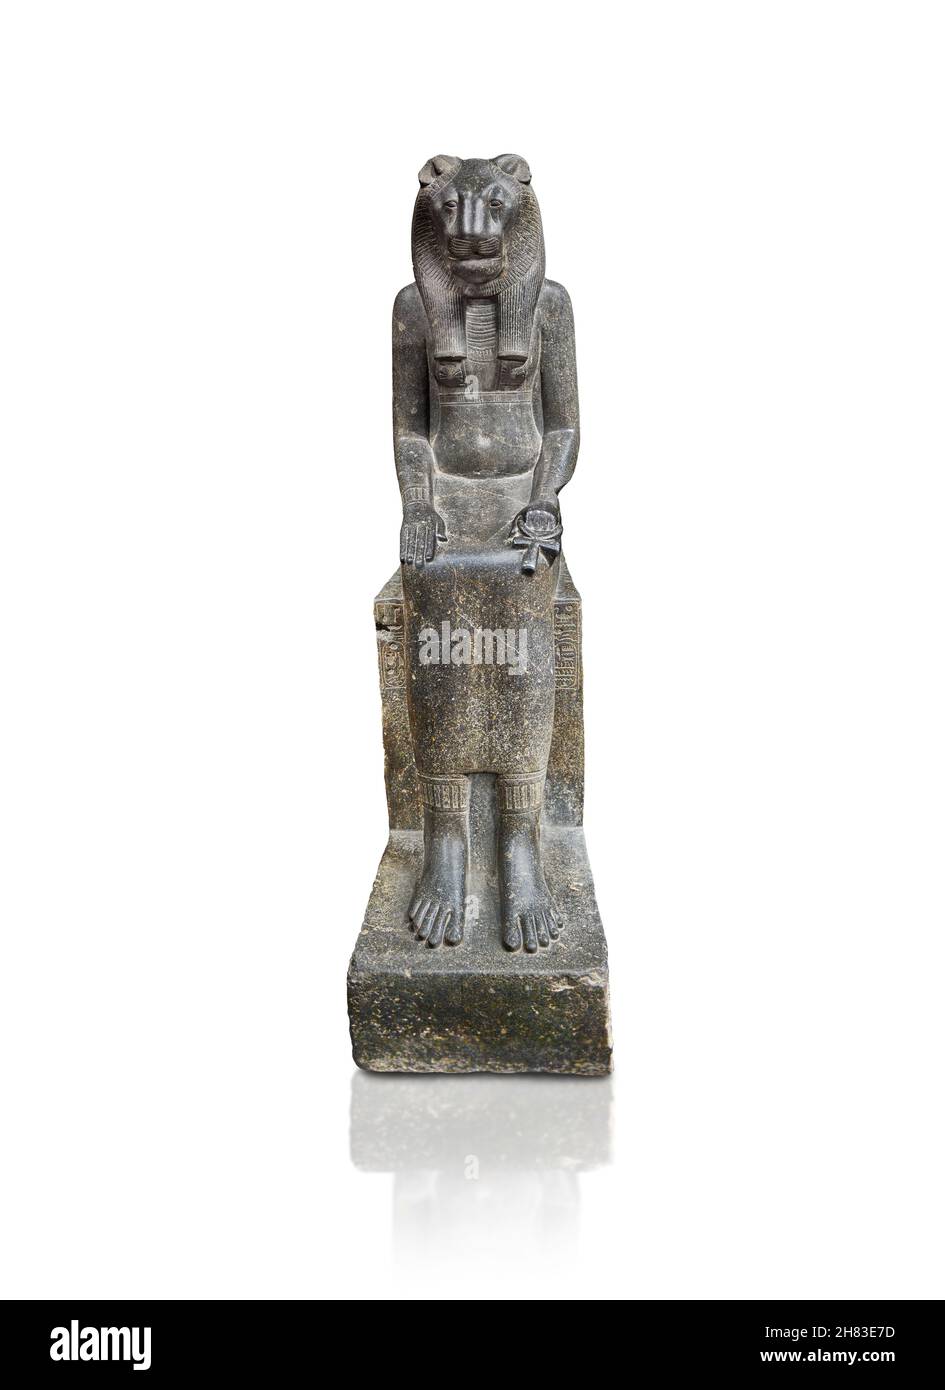 Alte ägyptische sitzende Statue der Göttin Sakhmet, 1410- 1372 BC 16th Dynastie, Mut Tempel Karnak. Kunsthistorisches Museum Wien Inv. AS 78. Dio Stockfoto